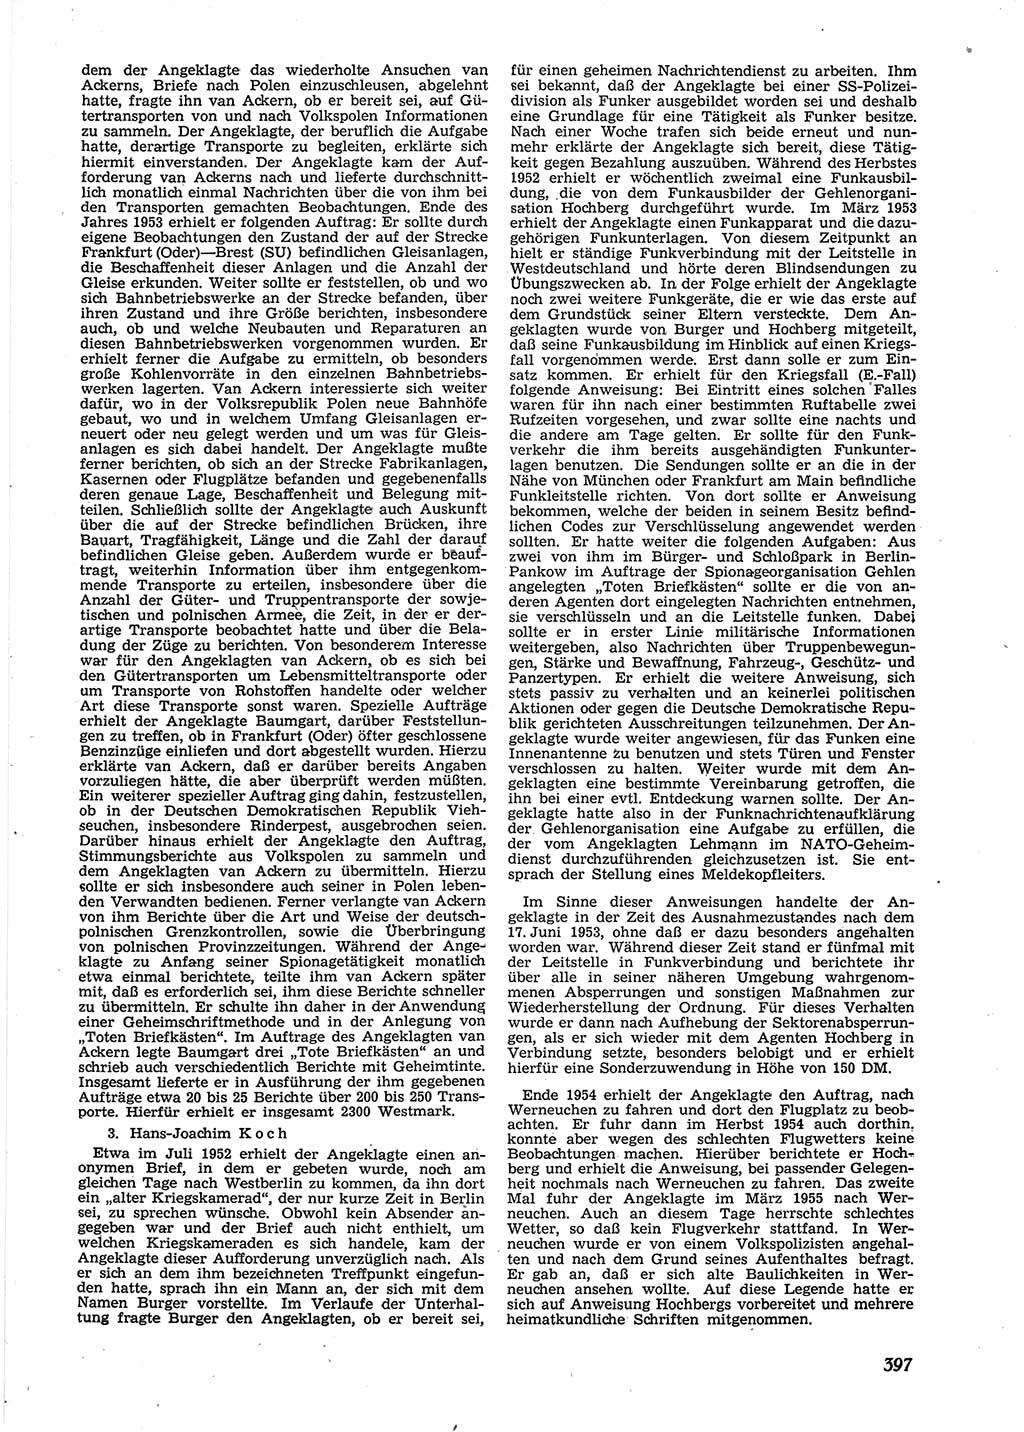 Neue Justiz (NJ), Zeitschrift für Recht und Rechtswissenschaft [Deutsche Demokratische Republik (DDR)], 9. Jahrgang 1955, Seite 397 (NJ DDR 1955, S. 397)